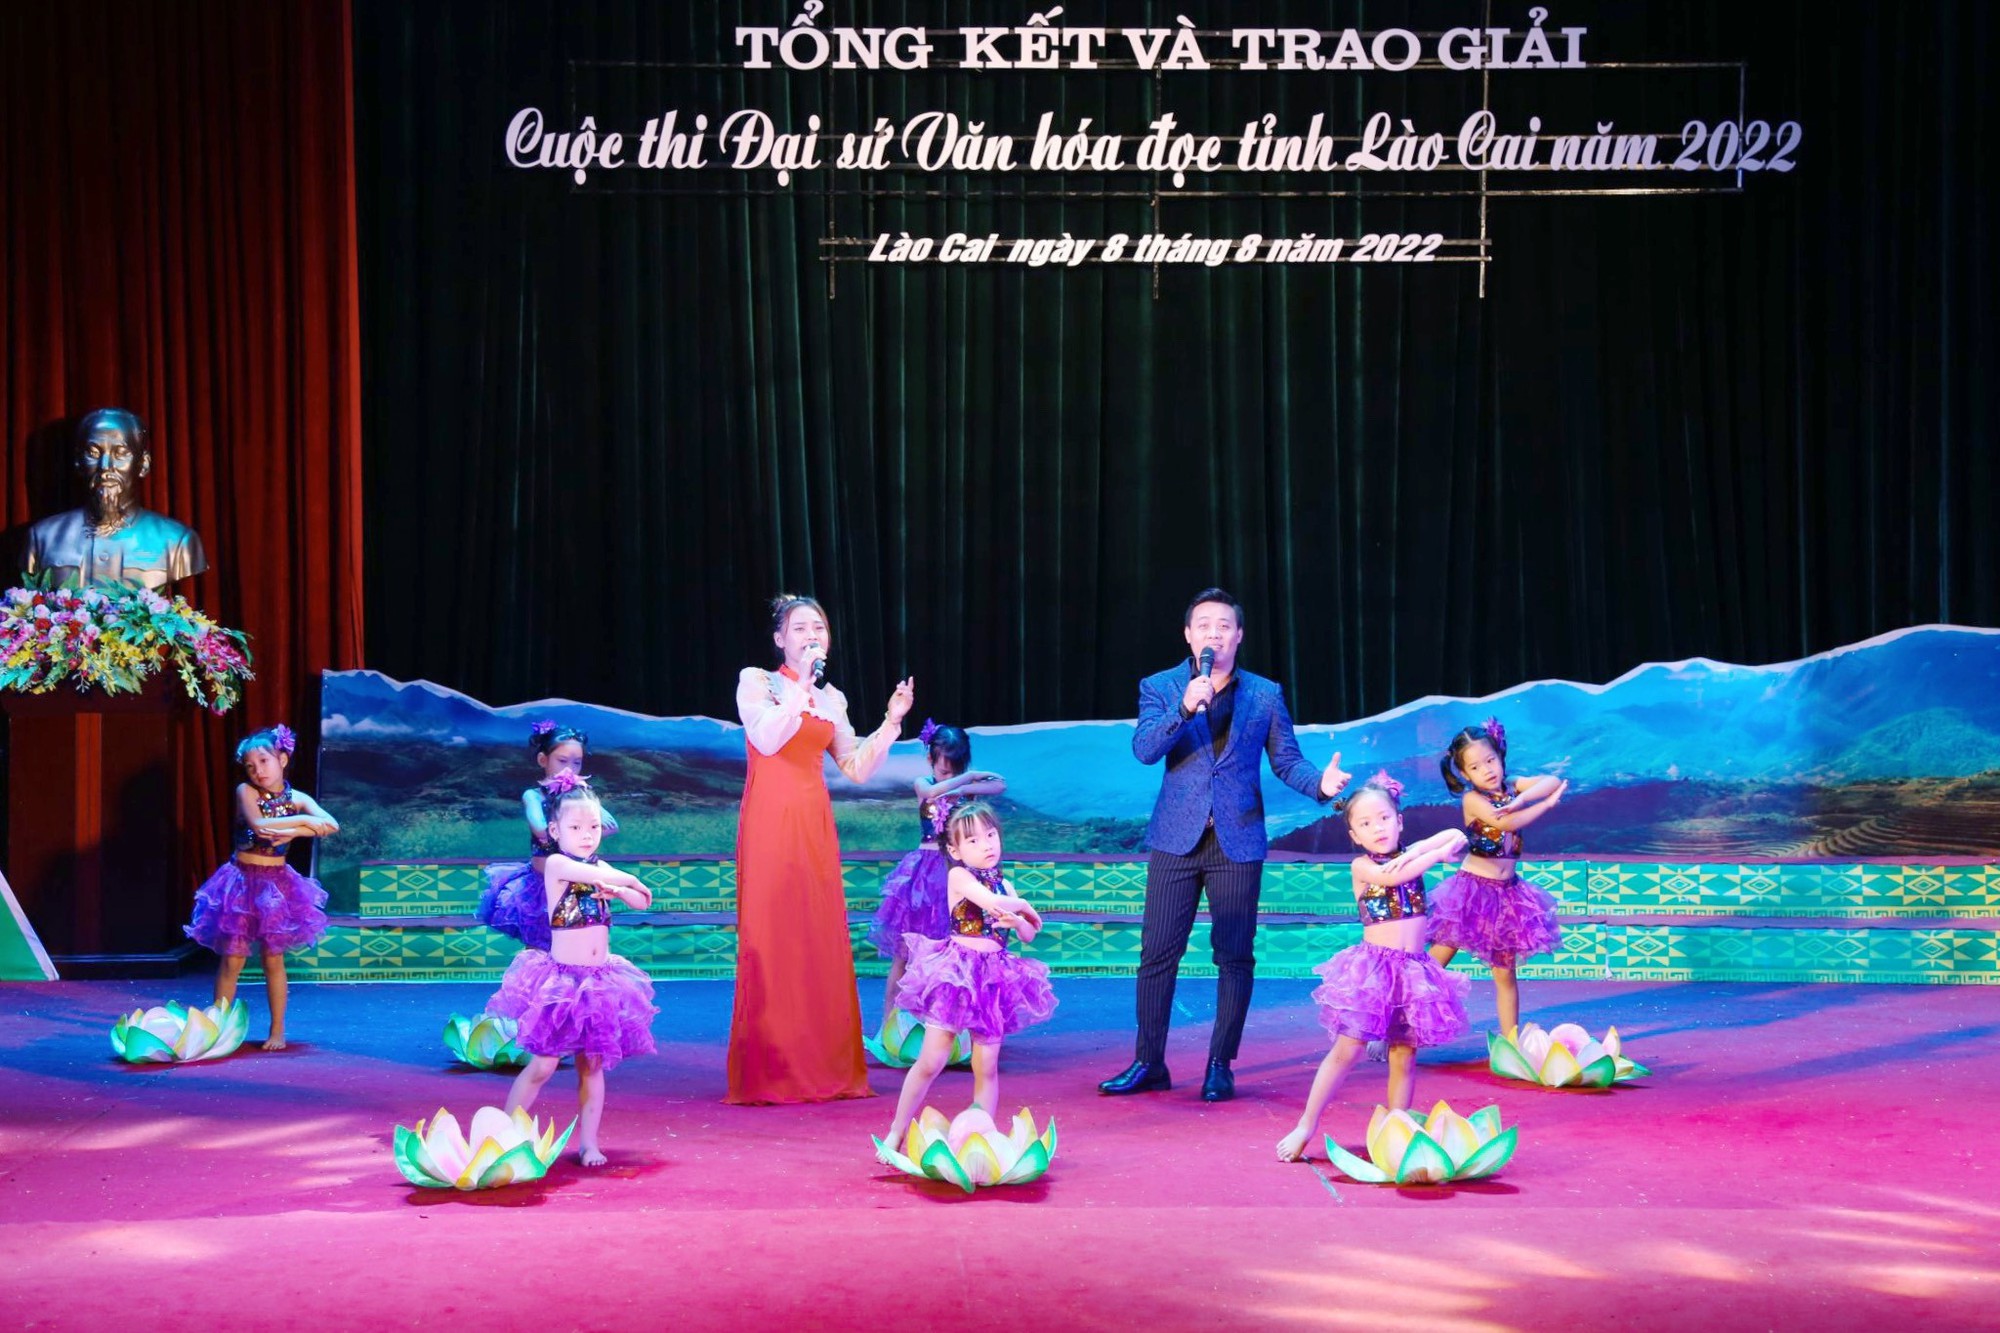 Tổng kết và trao giải Cuộc thi Đại sứ Văn hóa đọc tỉnh Lào Cai năm 2022 - Ảnh 1.